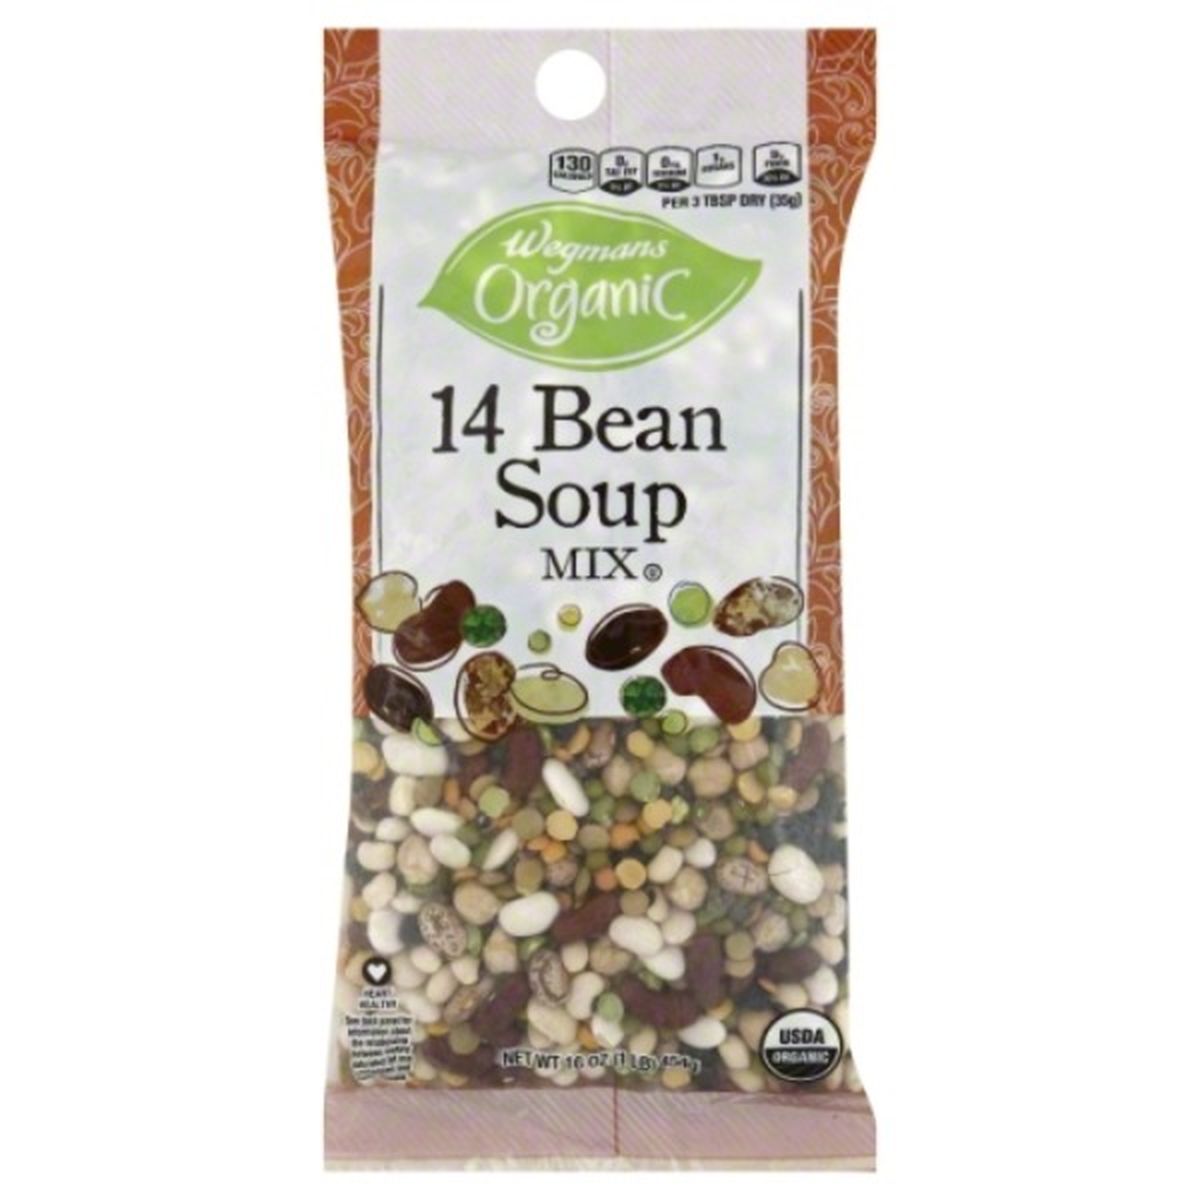 Calories in Wegmans Organic 14 Bean Soup Mix, Dry